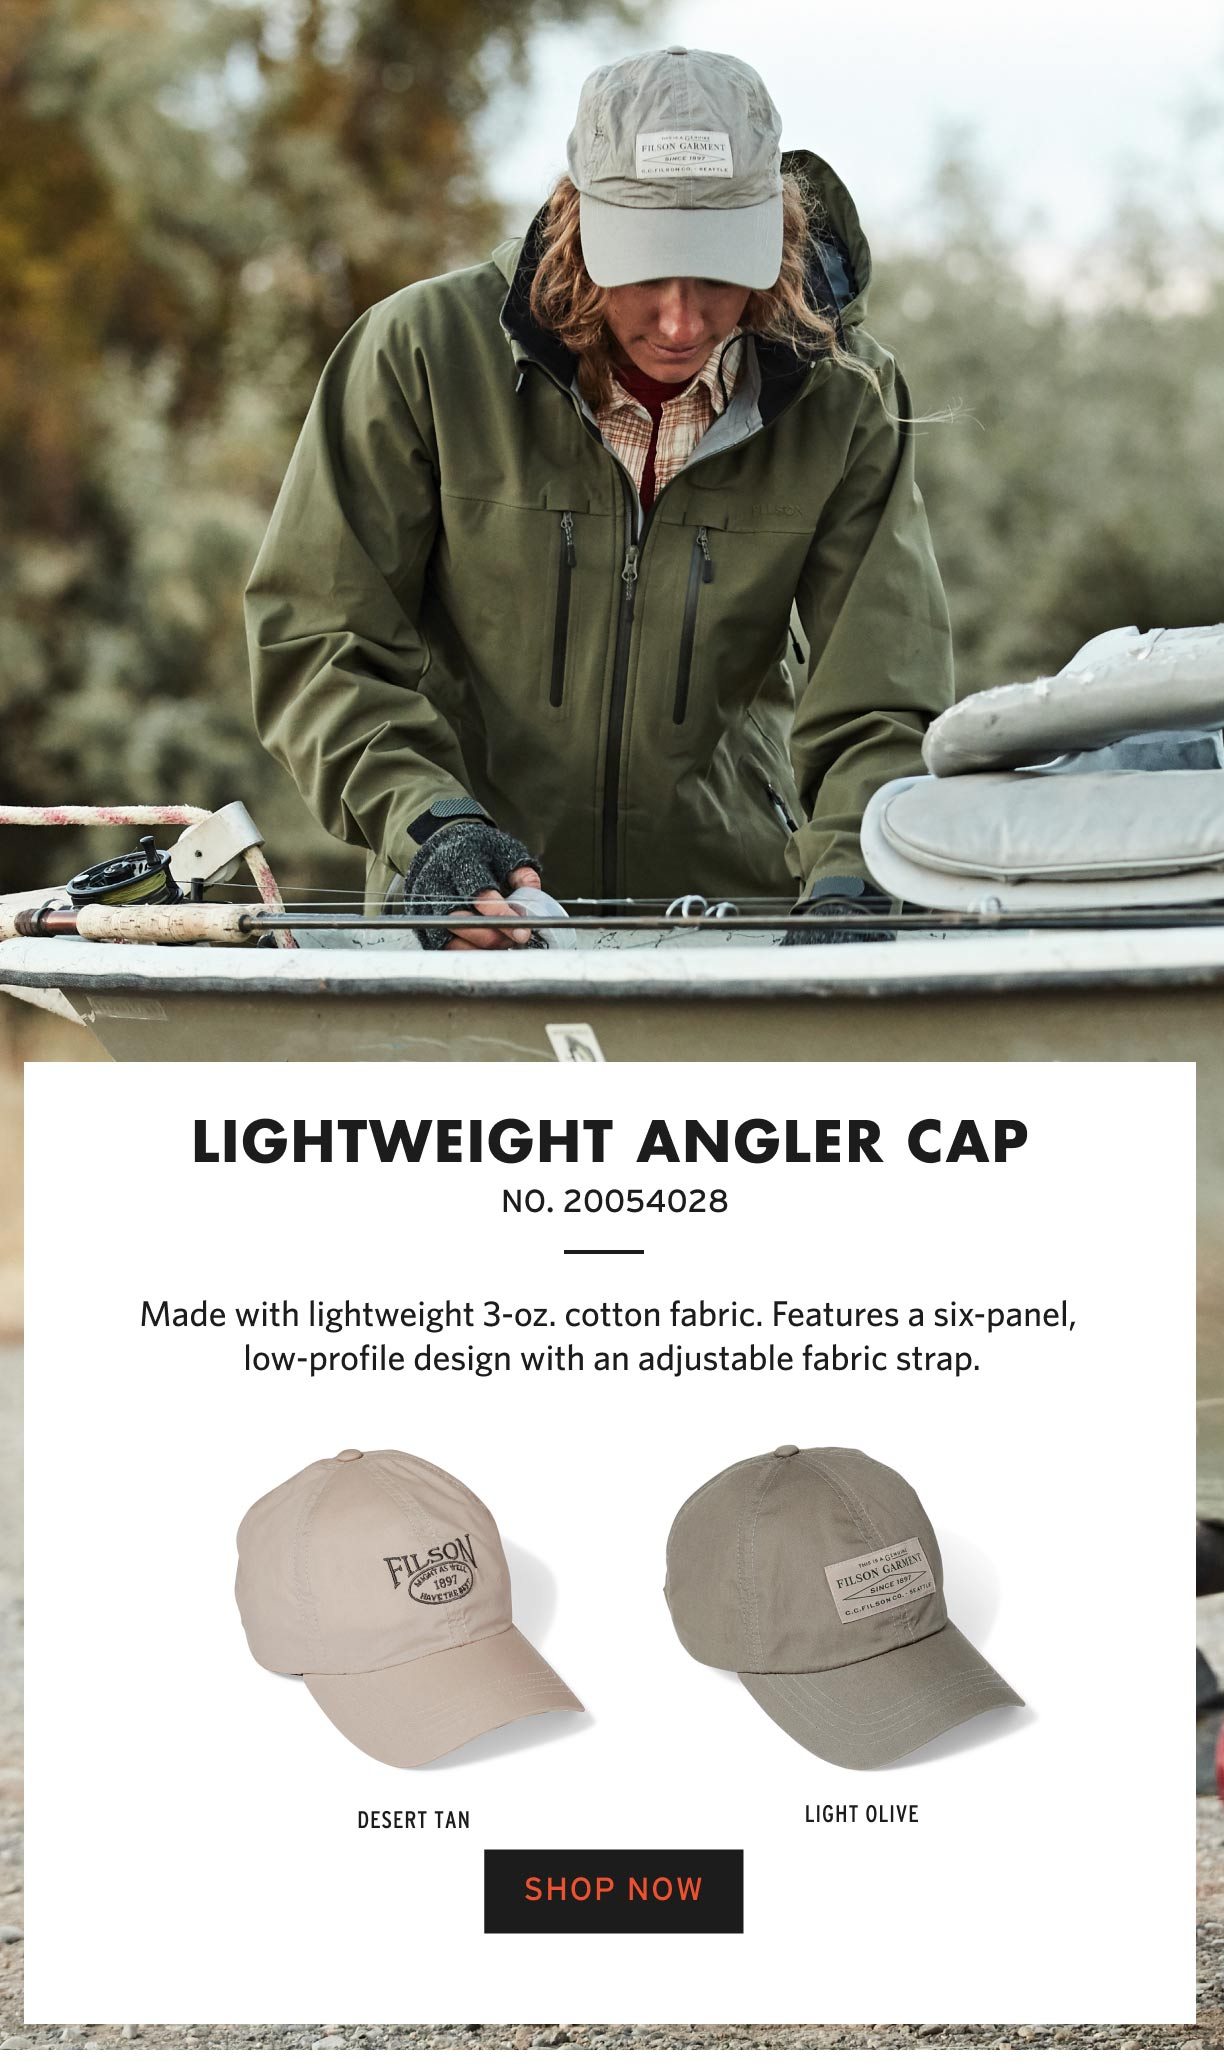 LIGHTWEIGHT ANGLER CAP. SHOP NOW